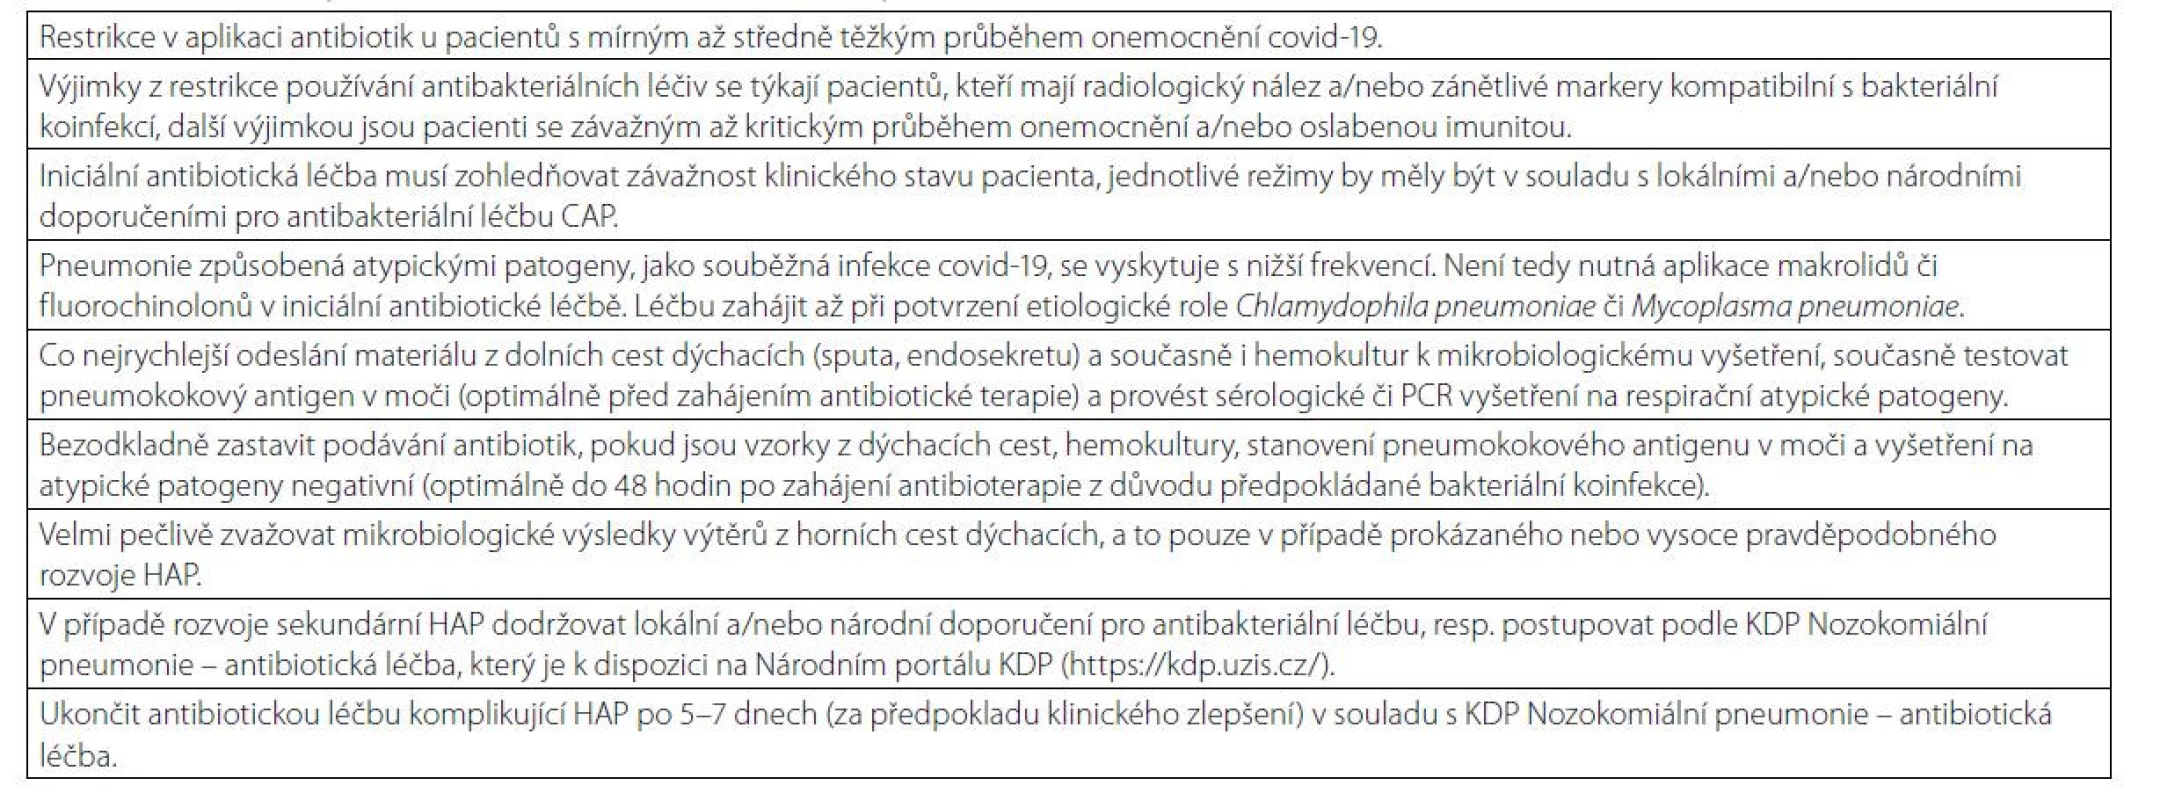 Hlavní zásady pro aplikaci antibiotik u hospitalizovaných pacientů s covidem-19